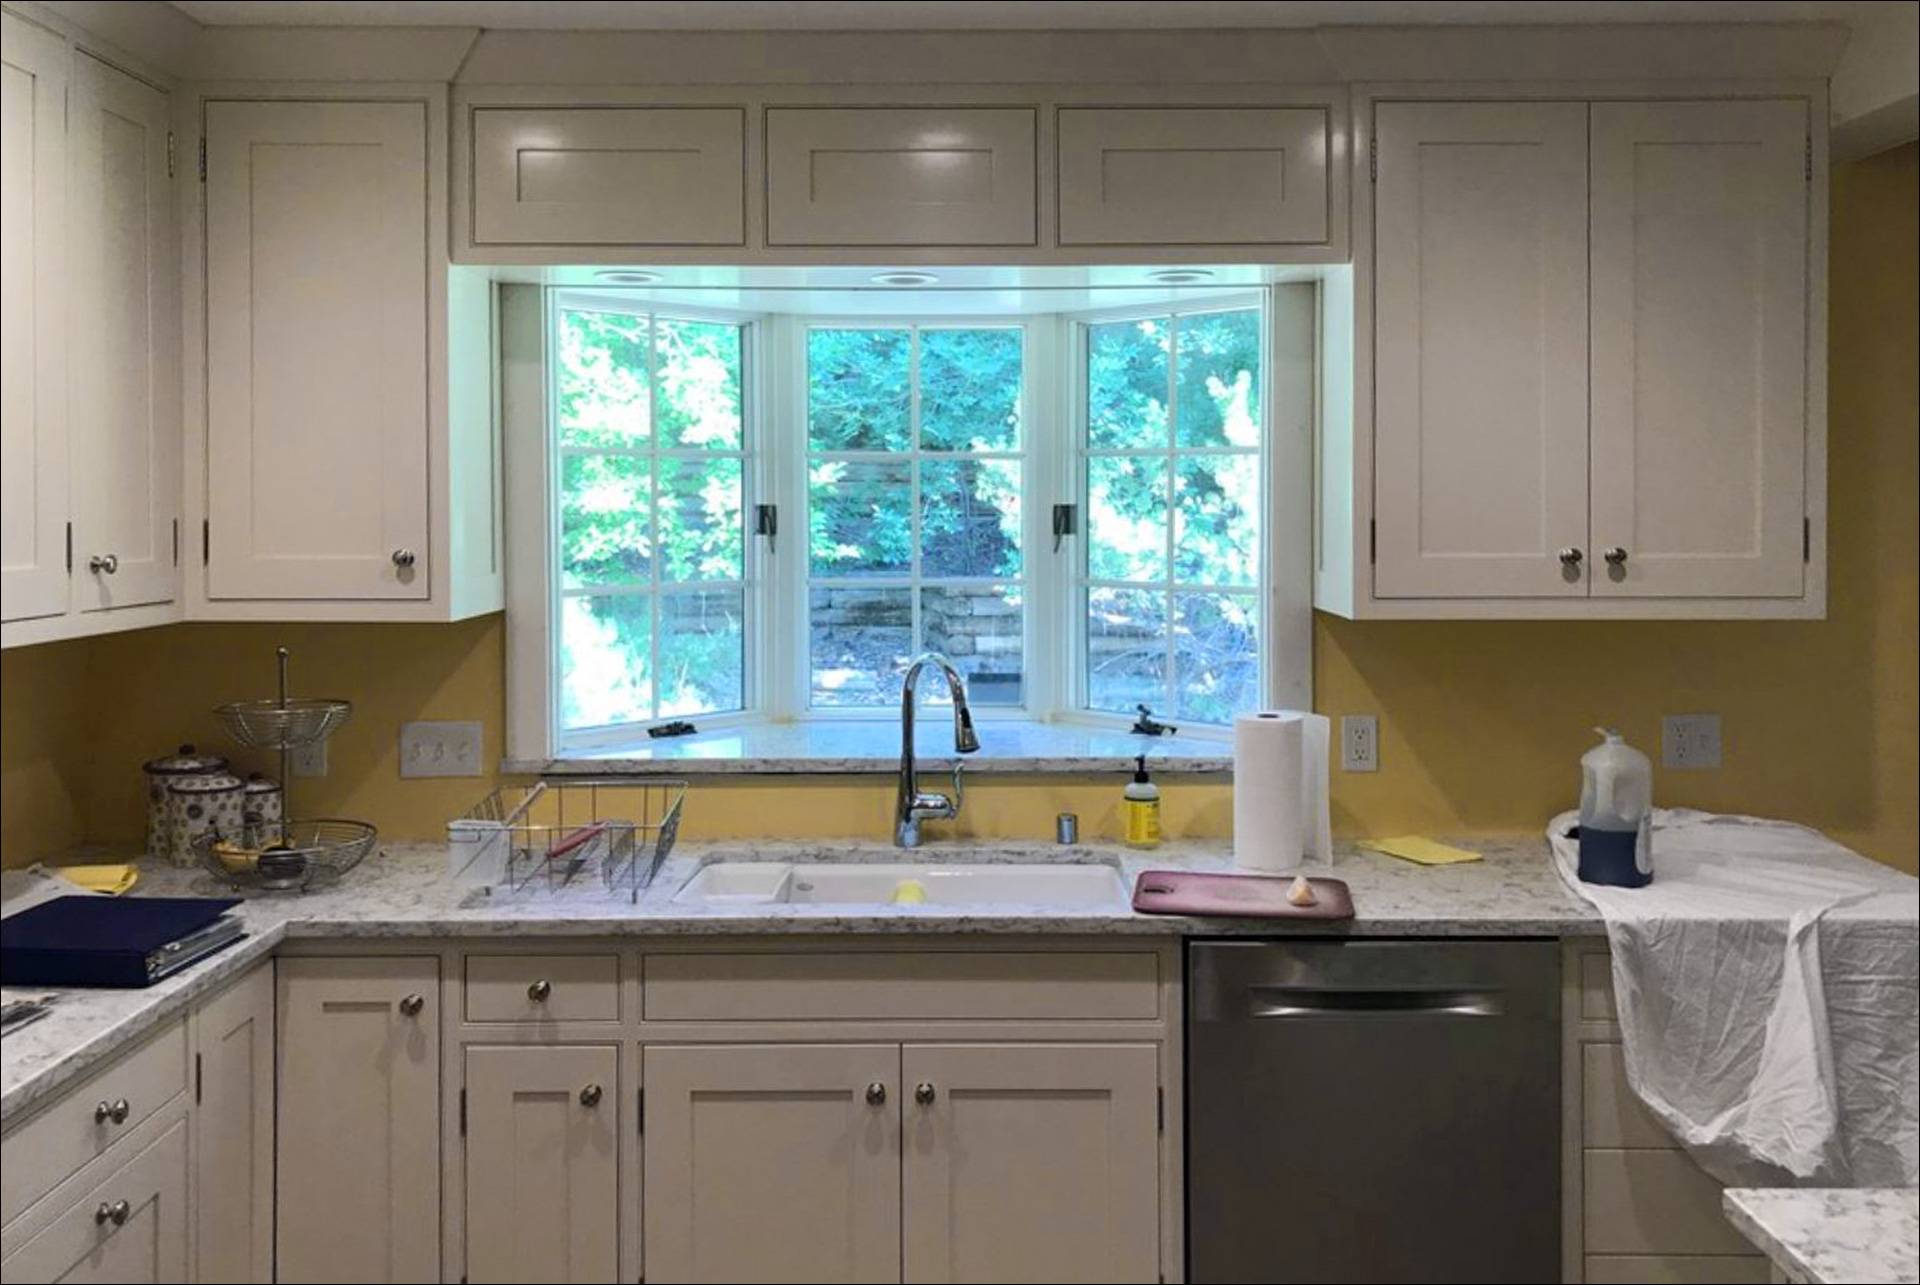 Дизайн кухни с окном - как разместить столешницу, раковину, рабочую зону или зону отдыха у окна (100 лучших фото идей) оформление окна на кухне